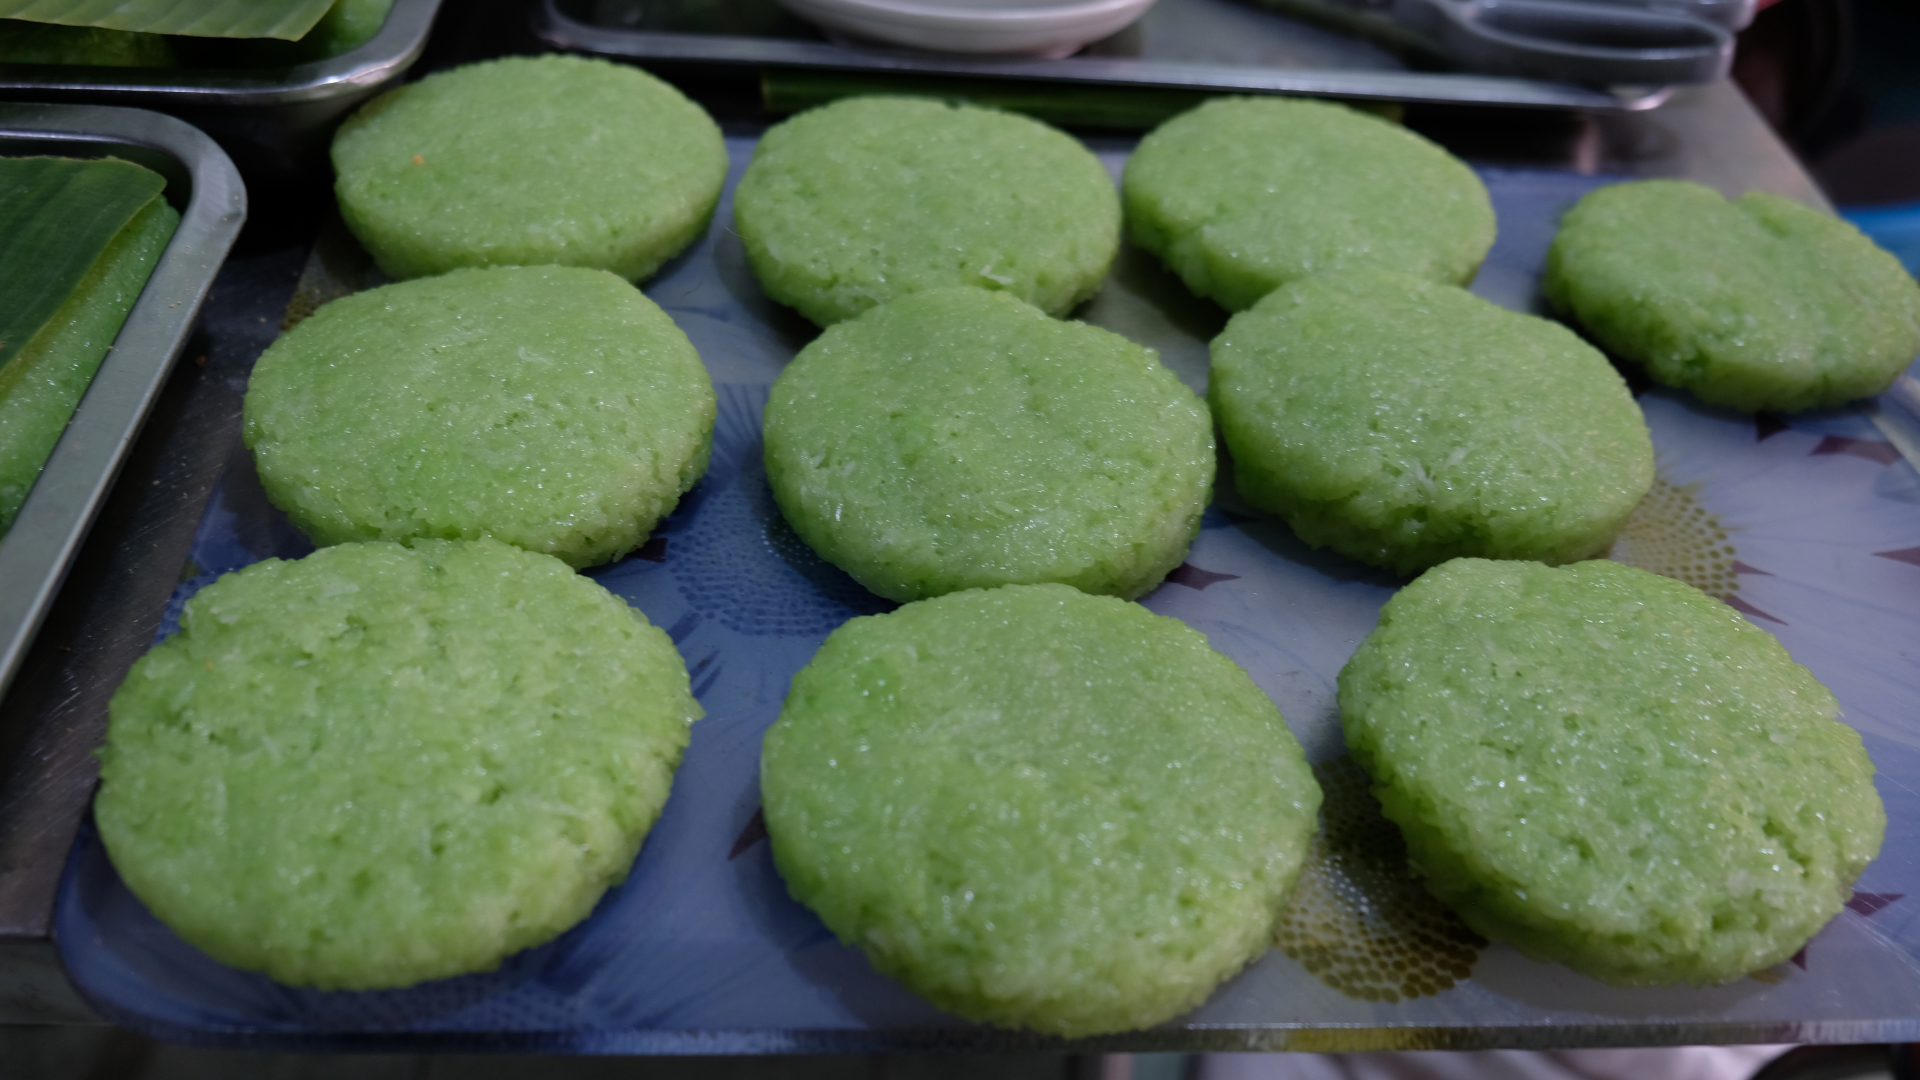 Bánh nếp nướng ăn kèm cốt dừa lá dứa xanh nõn siêu ngon tại Chợ Lớn- Ảnh 2.